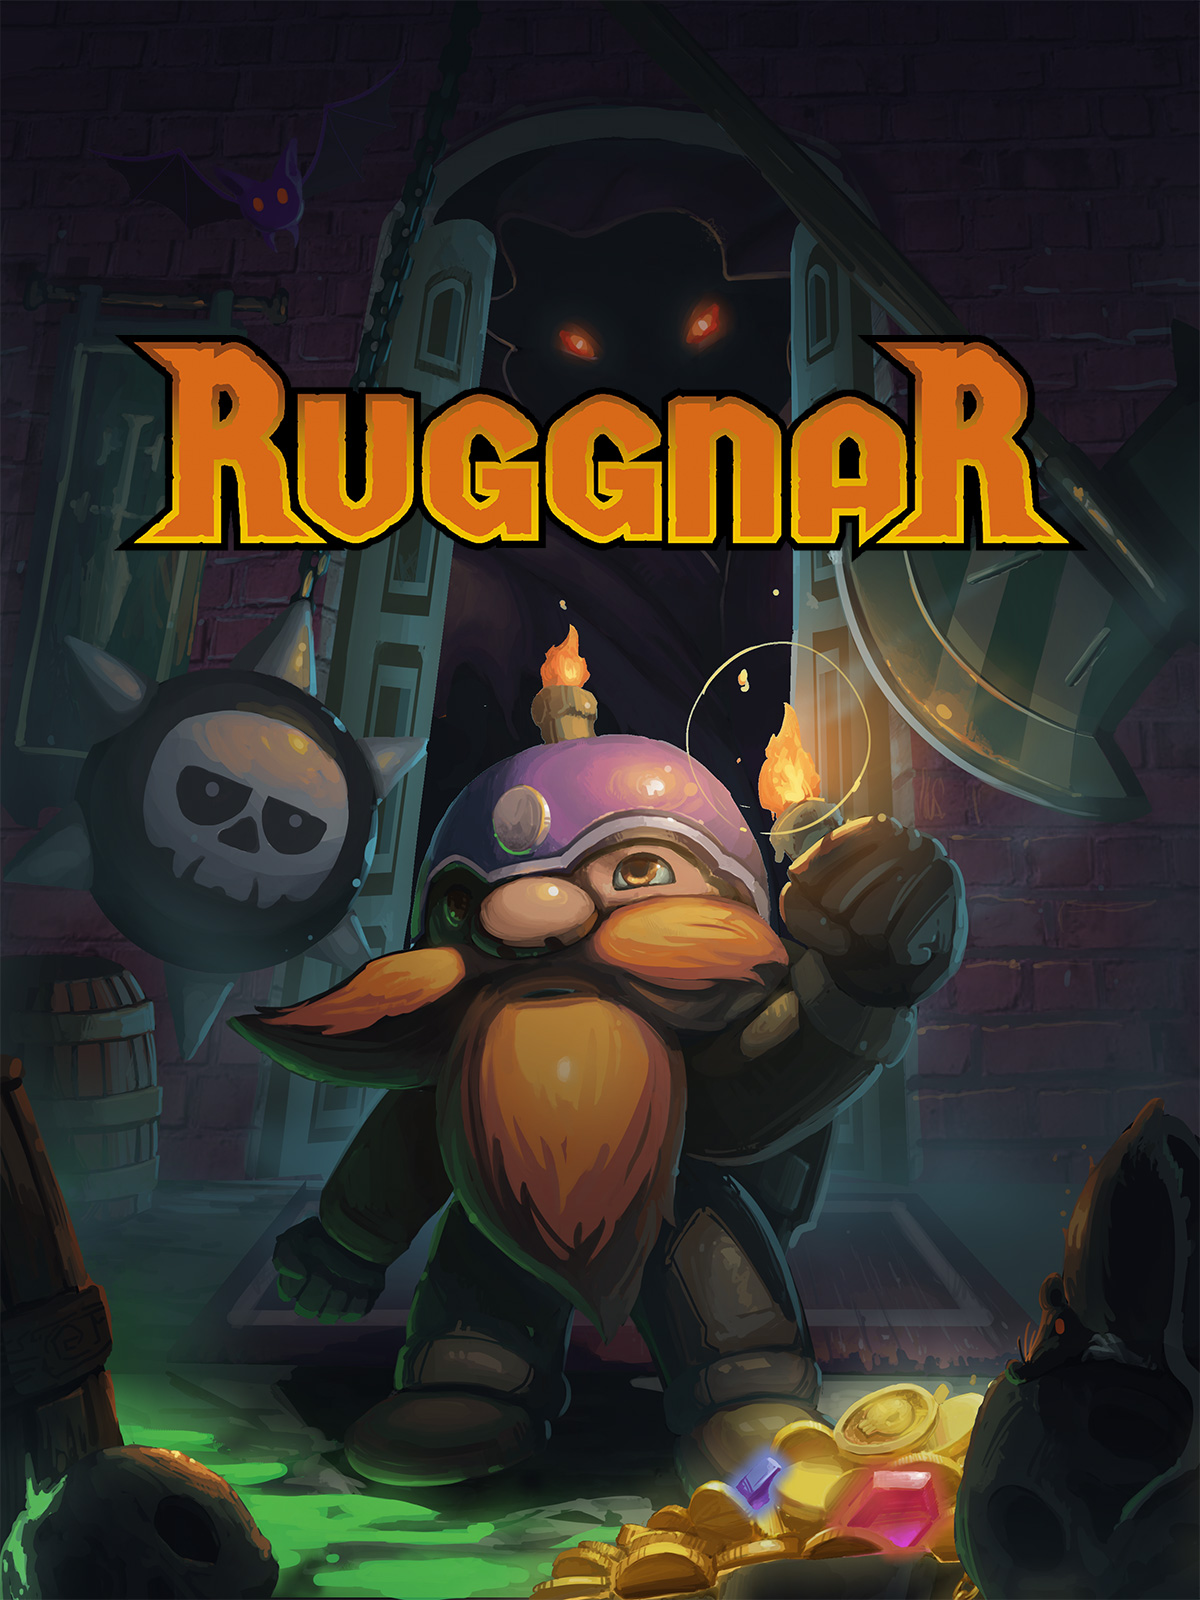 Ruggnar [PC, Цифровая версия] (Цифровая версия) цена и фото